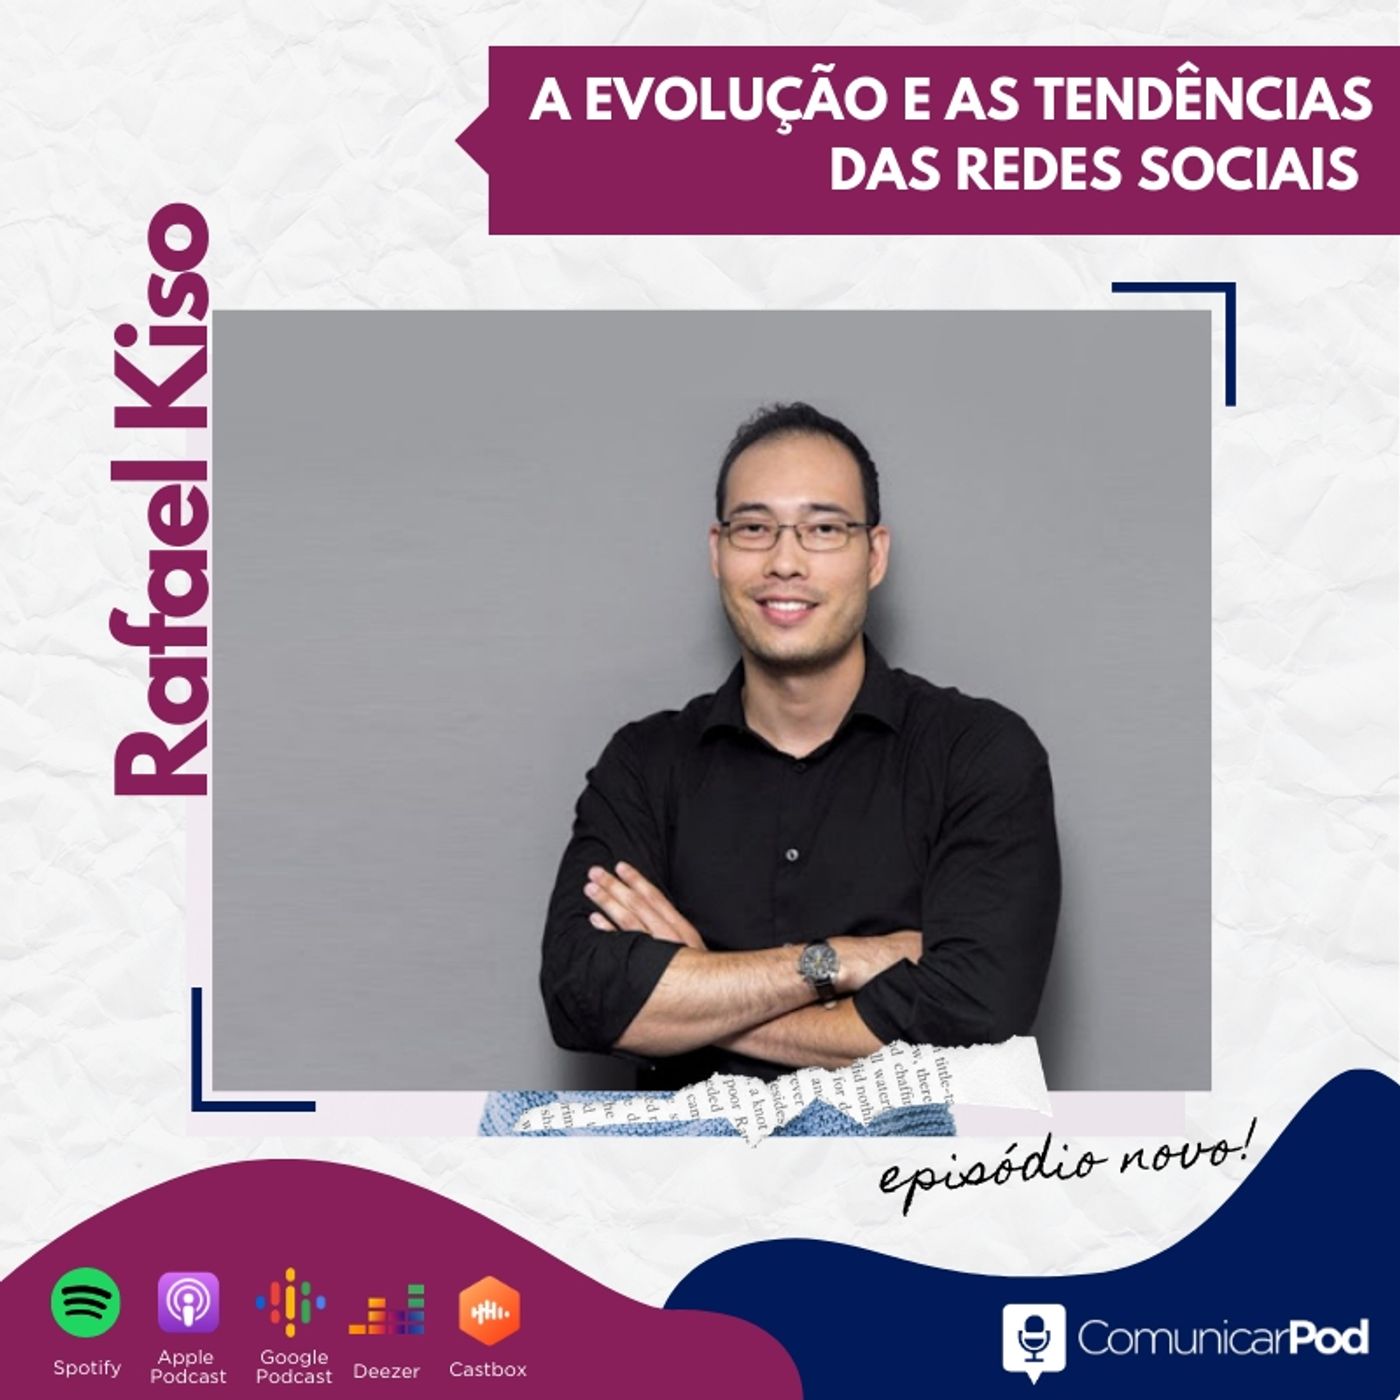 ComunicarPod #36 | A evolução e tendências das redes sociais com Rafael Kiso